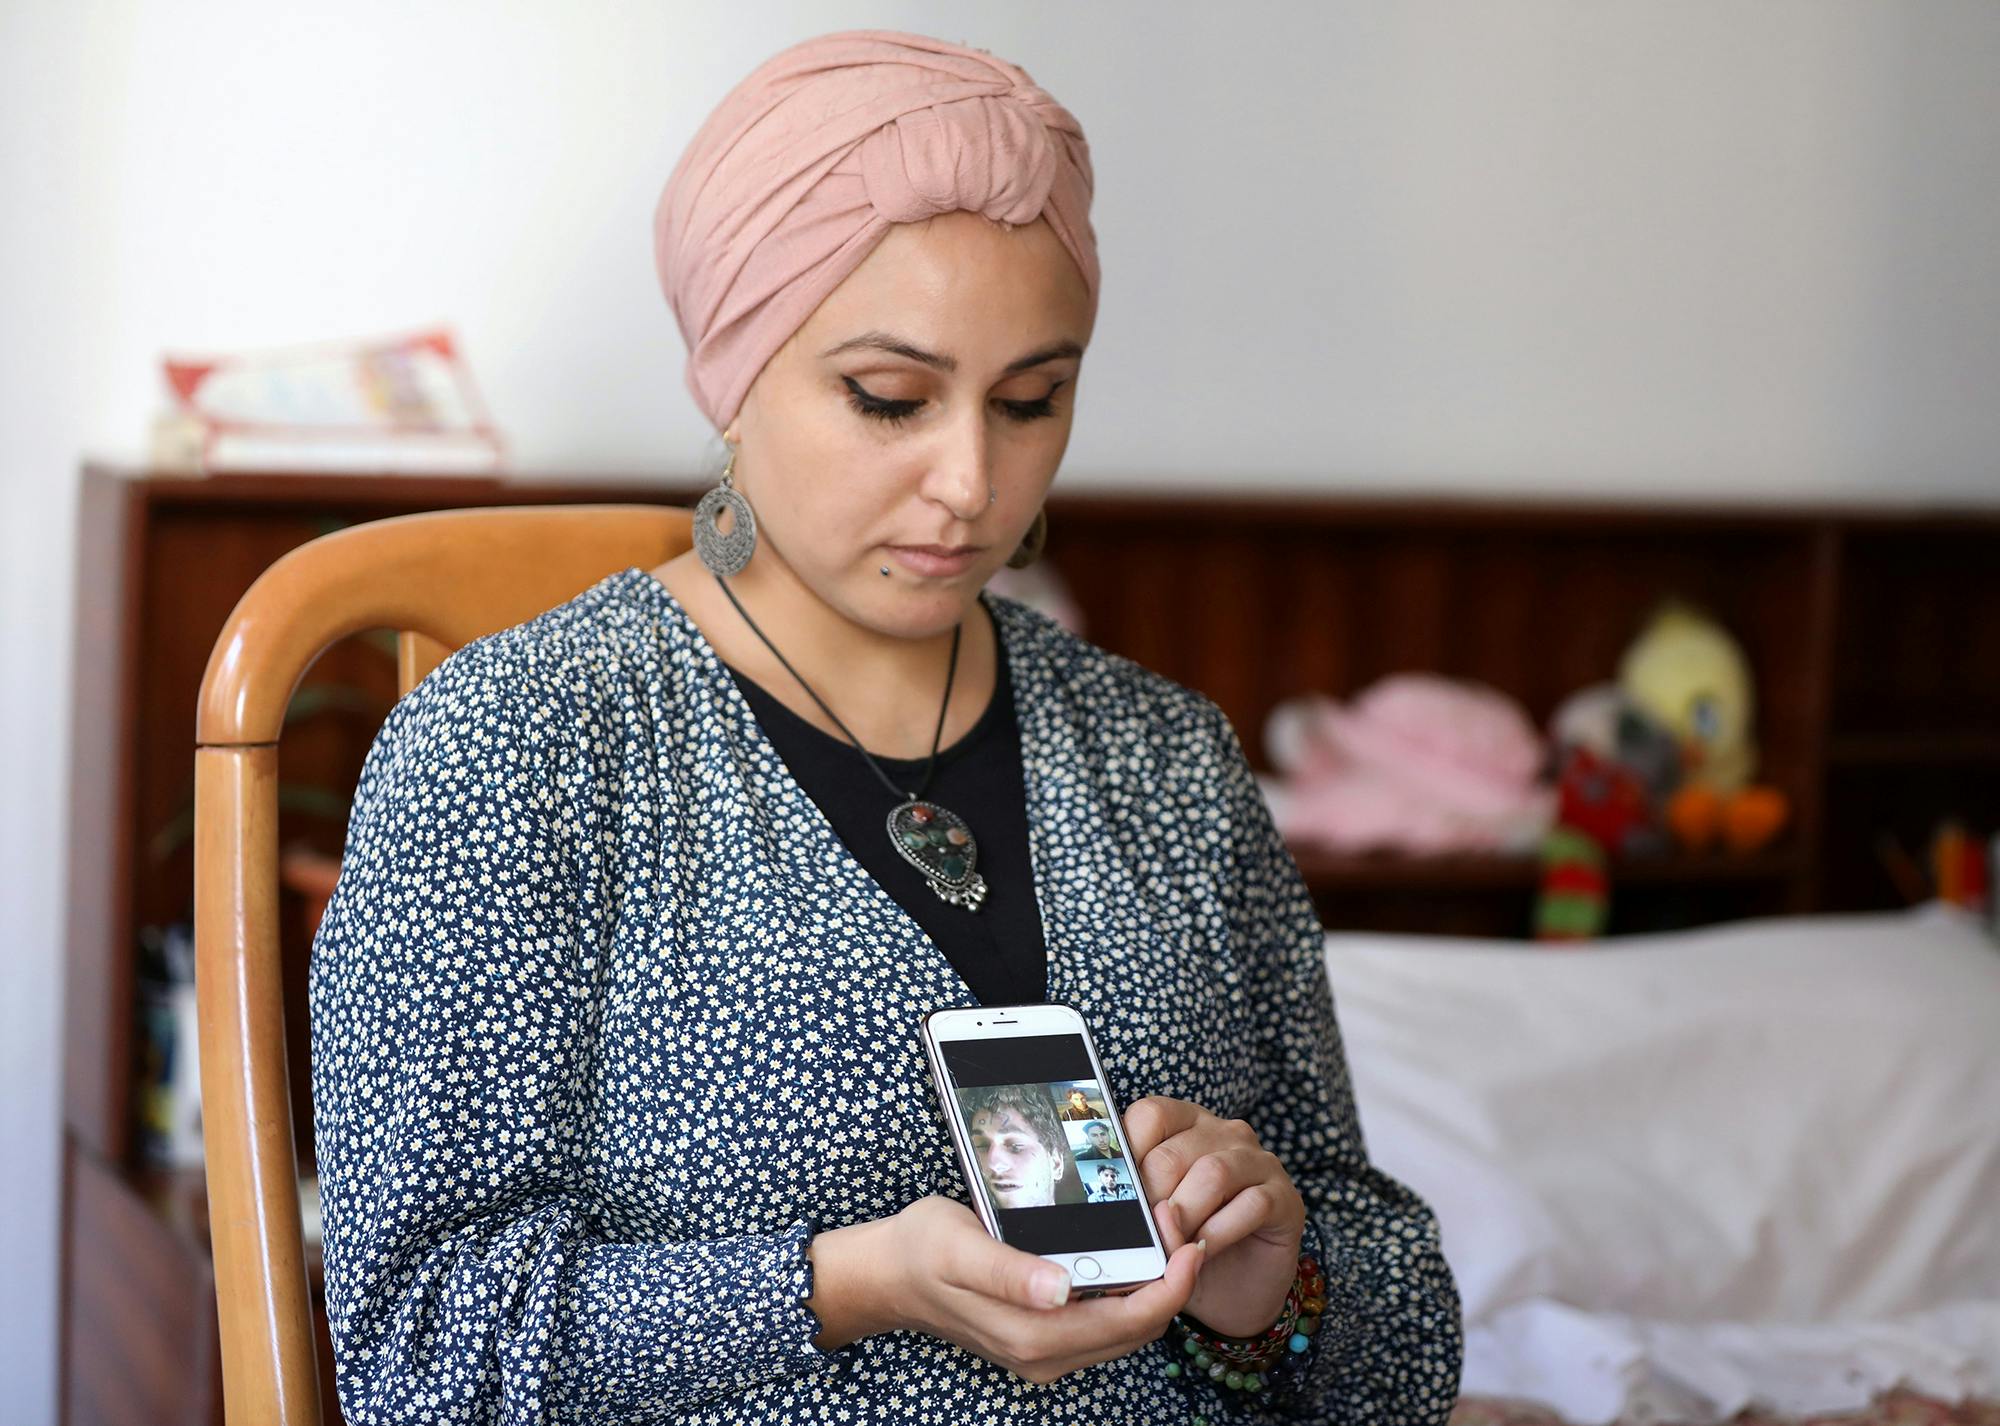 Fida Al Waer, une artiste et enseignante syrienne vivant à Beyrouth, pose en tenant un téléphone portable sur lequel s'affichent des photos de son frère qui, selon elle, a été identifié parmi des milliers d'images, sorties clandestinement de Syrie par un ancien photographe militaire syrien